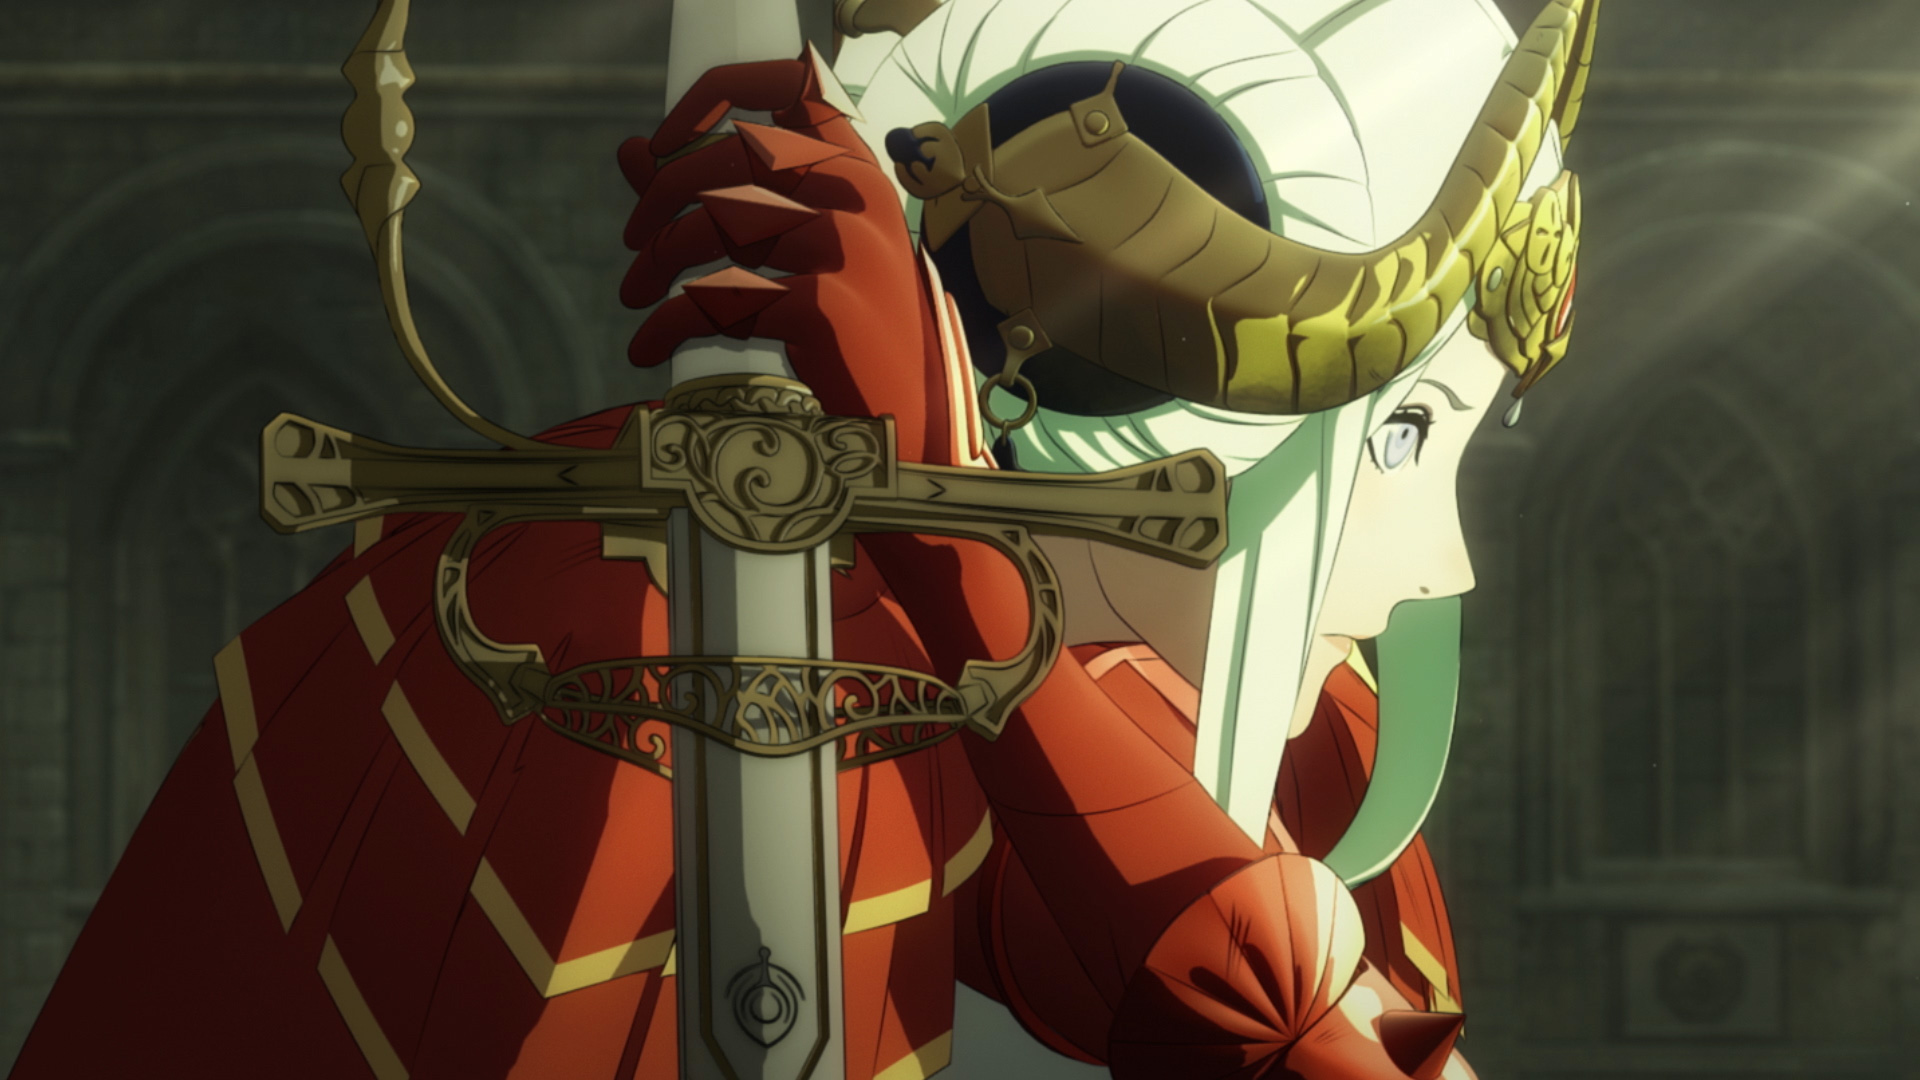 Edelgard with a sword